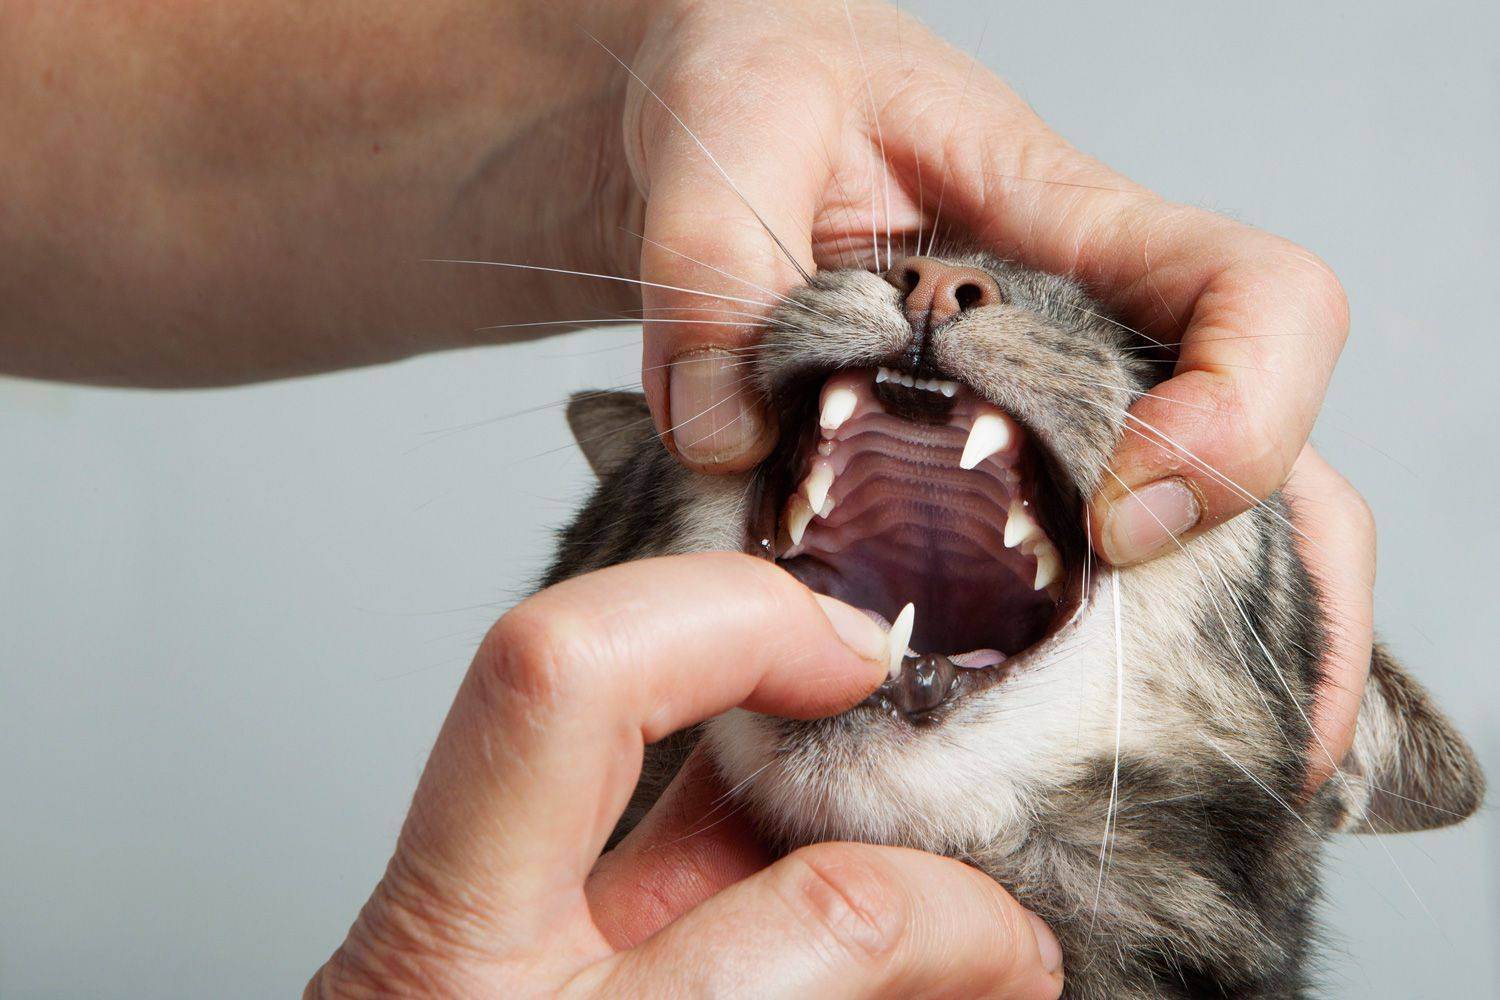 Из-за чего у кошки может пойти пена со рта? | мир кошек
почему у кошки идет пена изо рта? | мир кошек